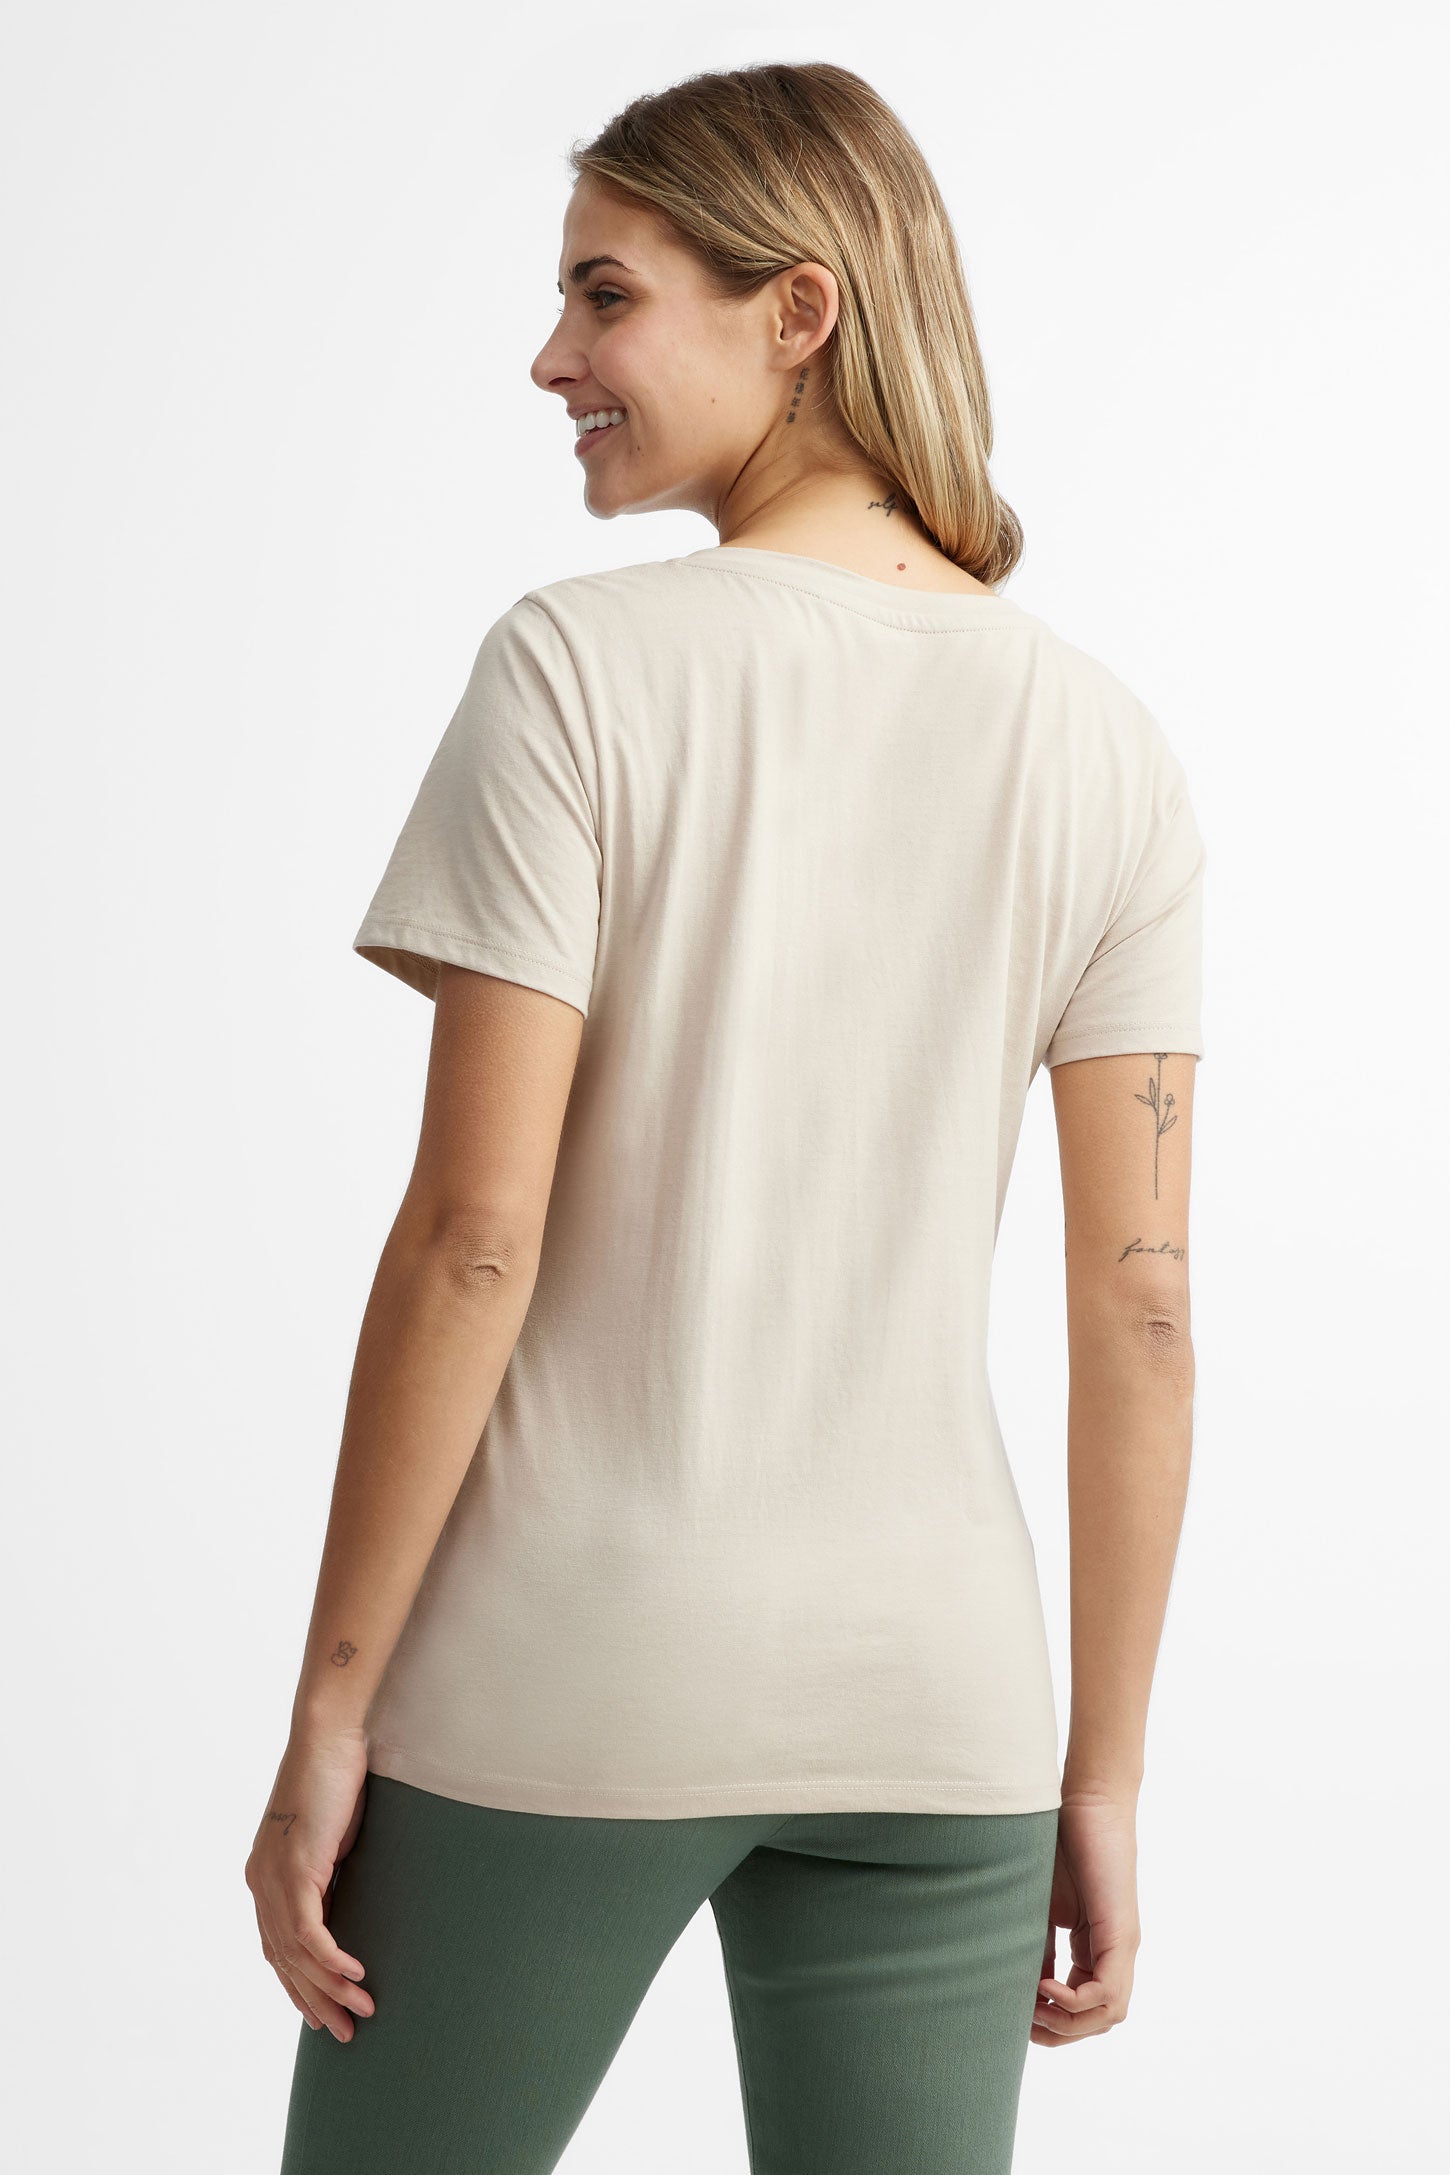 T-shirt col en V coupe semi-ajustée en coton, 2/30$ - Femme && BEIGE